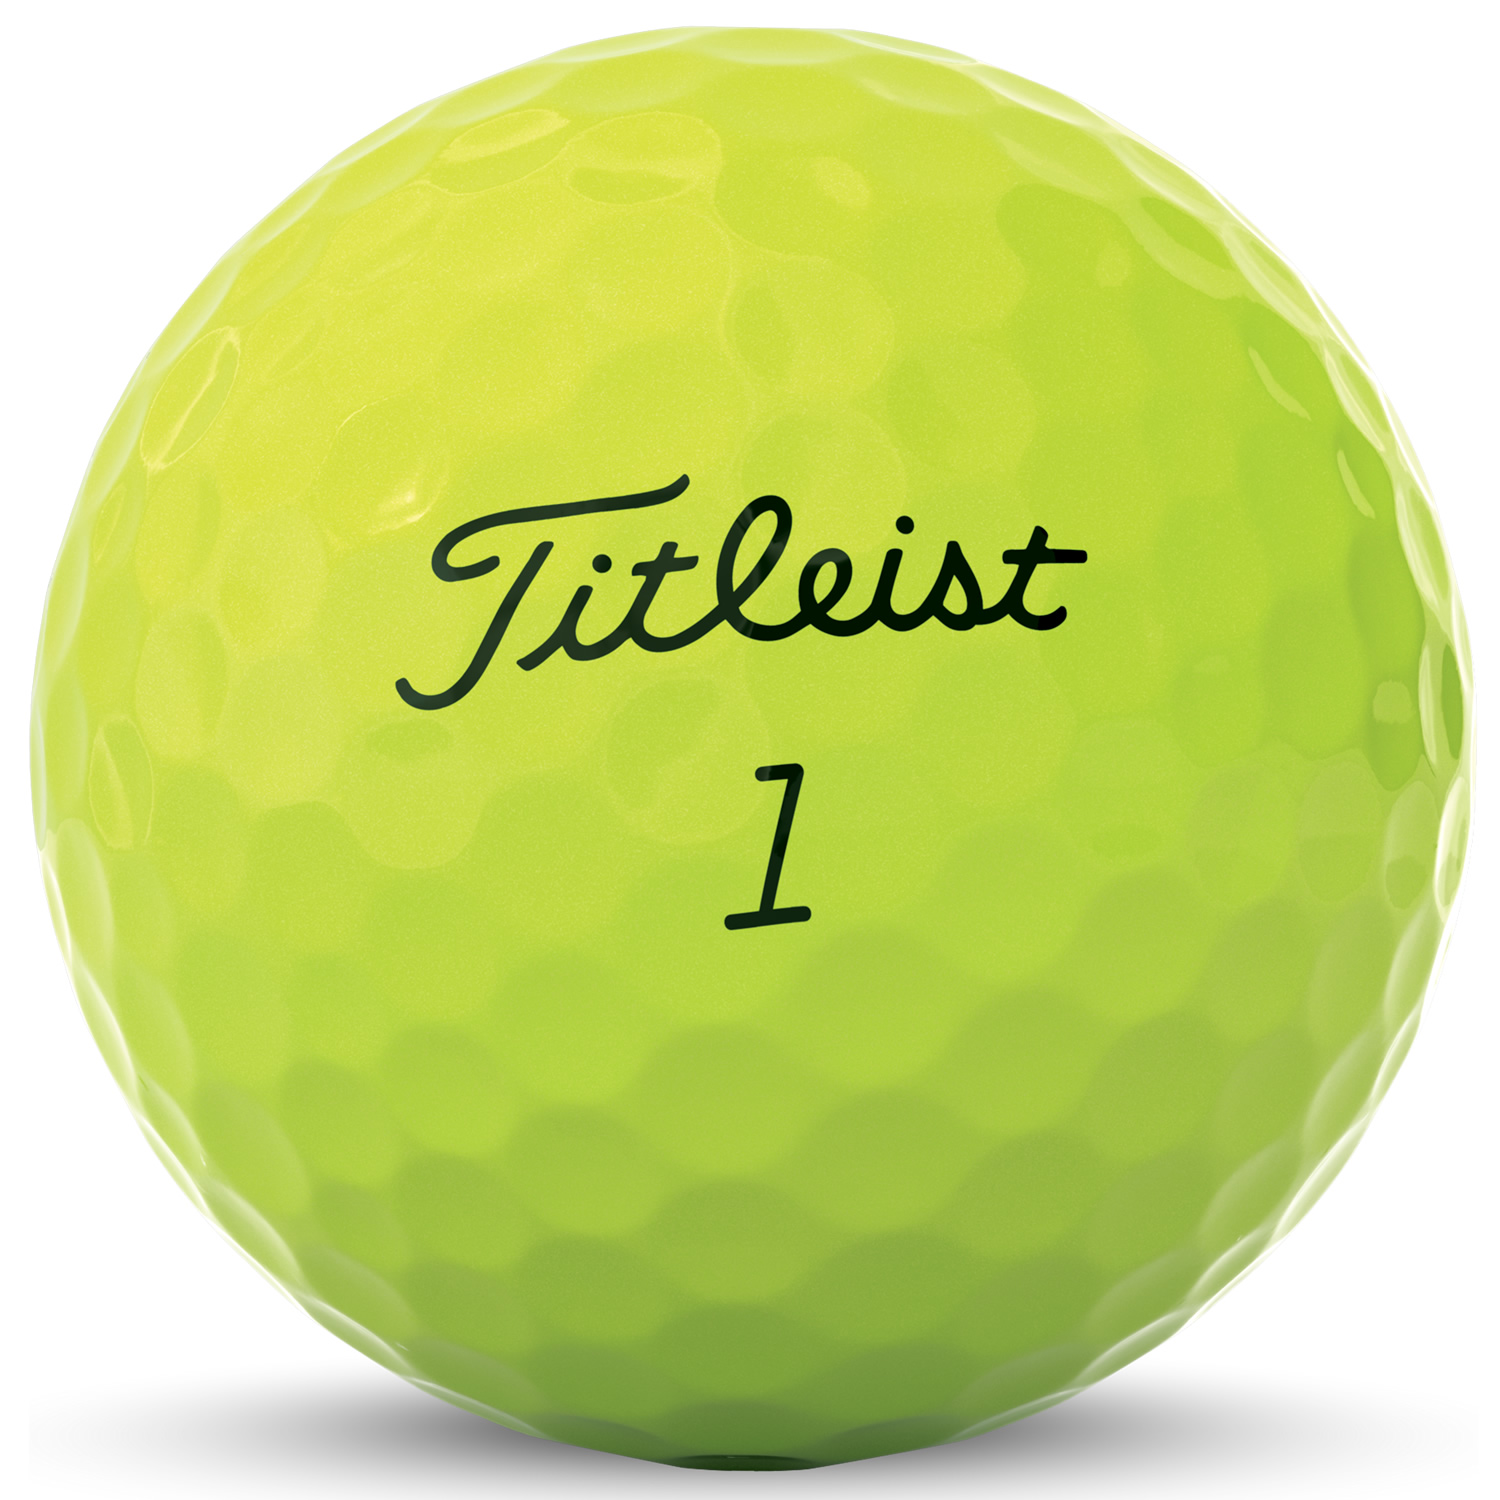 buy titleist tour soft golf balls